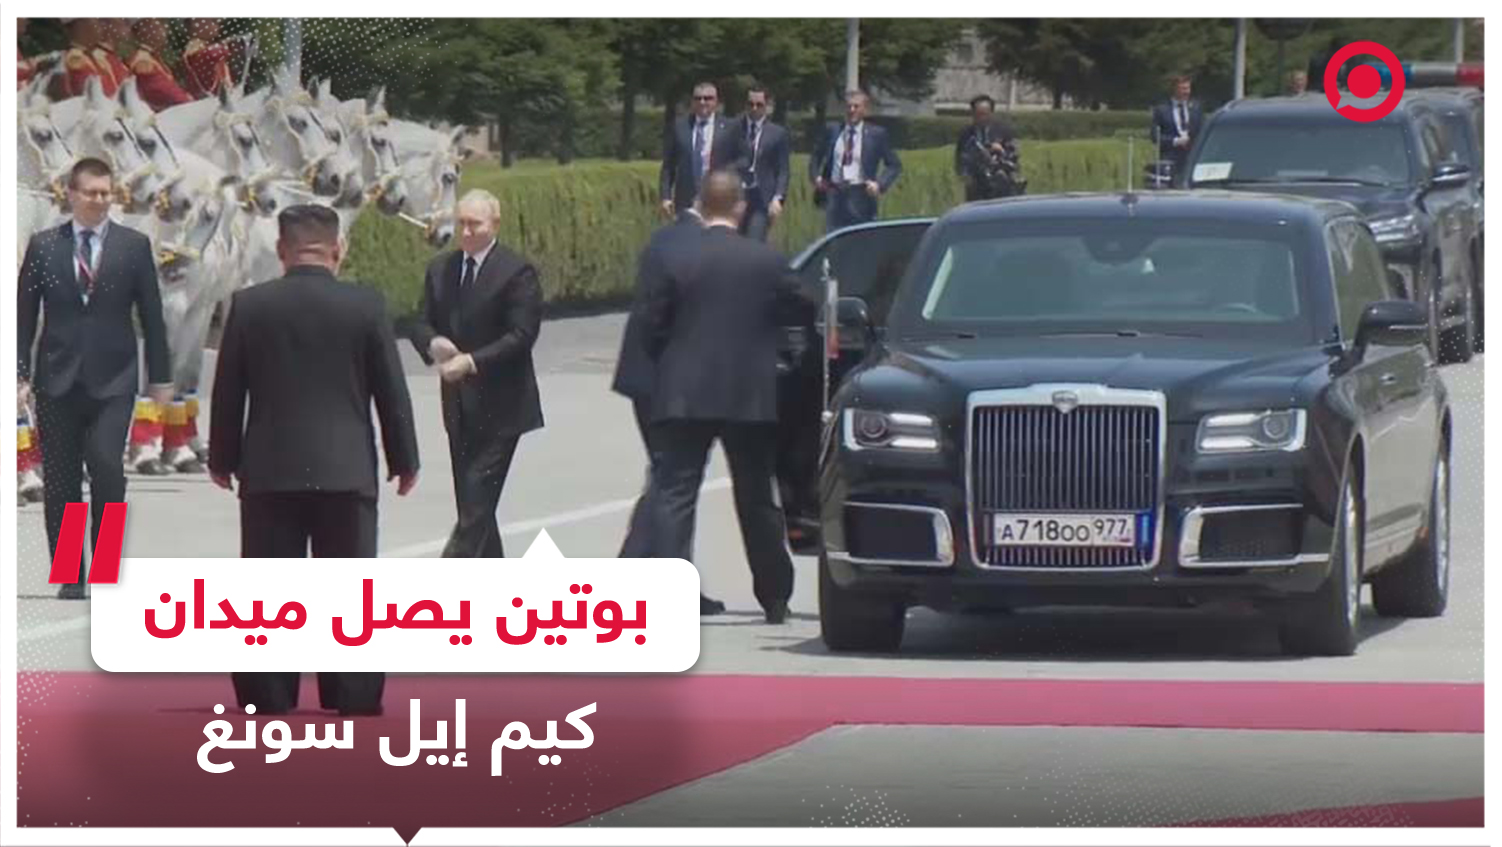 اللحظات الأولى لوصول موكب الرئيس بوتين إلى ميدان كيم إيل سونغ من أجل مراسم الاستقبال الرسمية